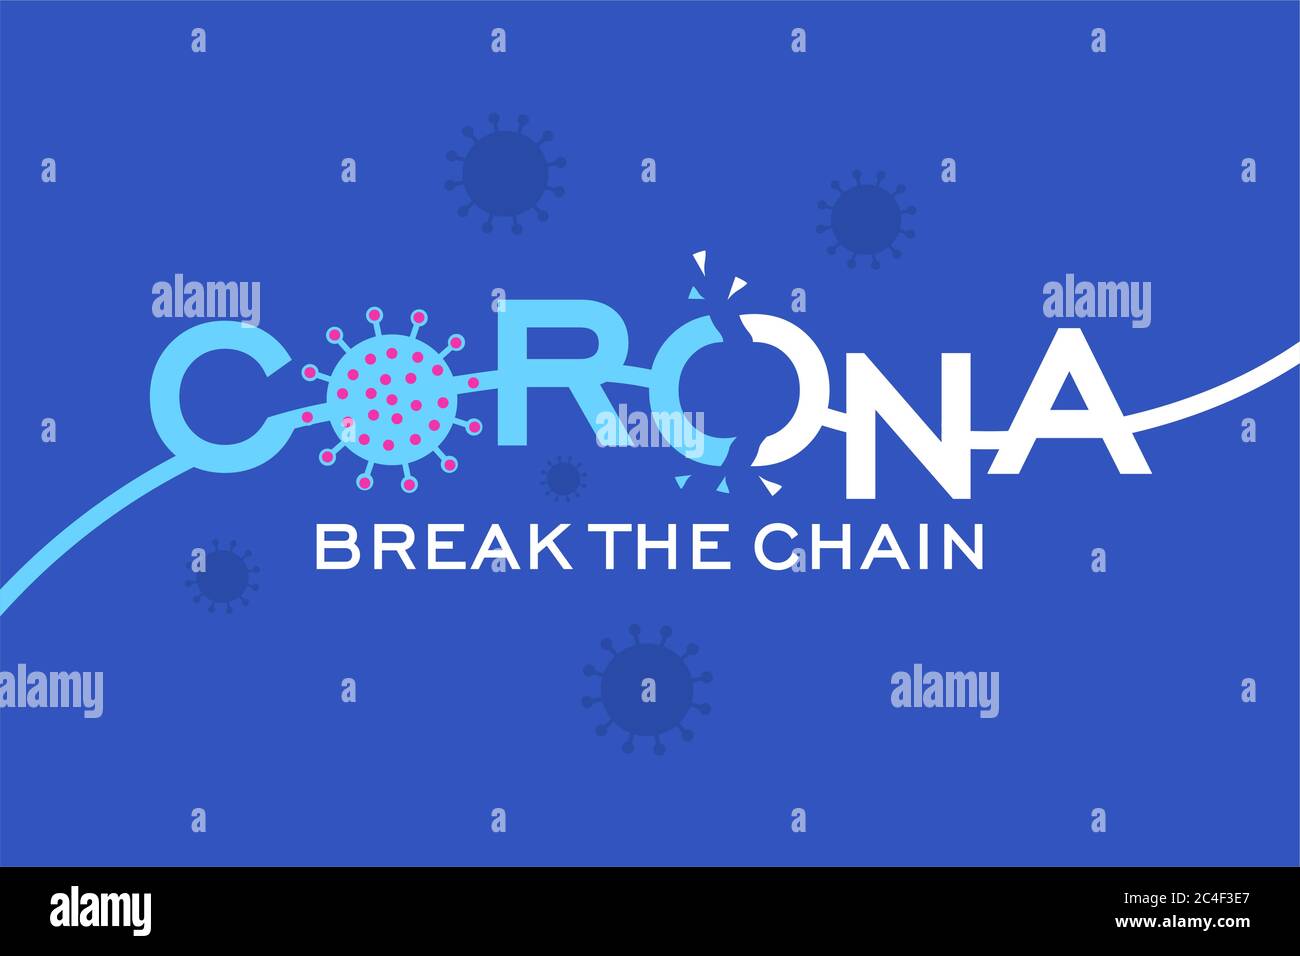 Le virus Corona brise la chaîne bleu fond Illustration de Vecteur